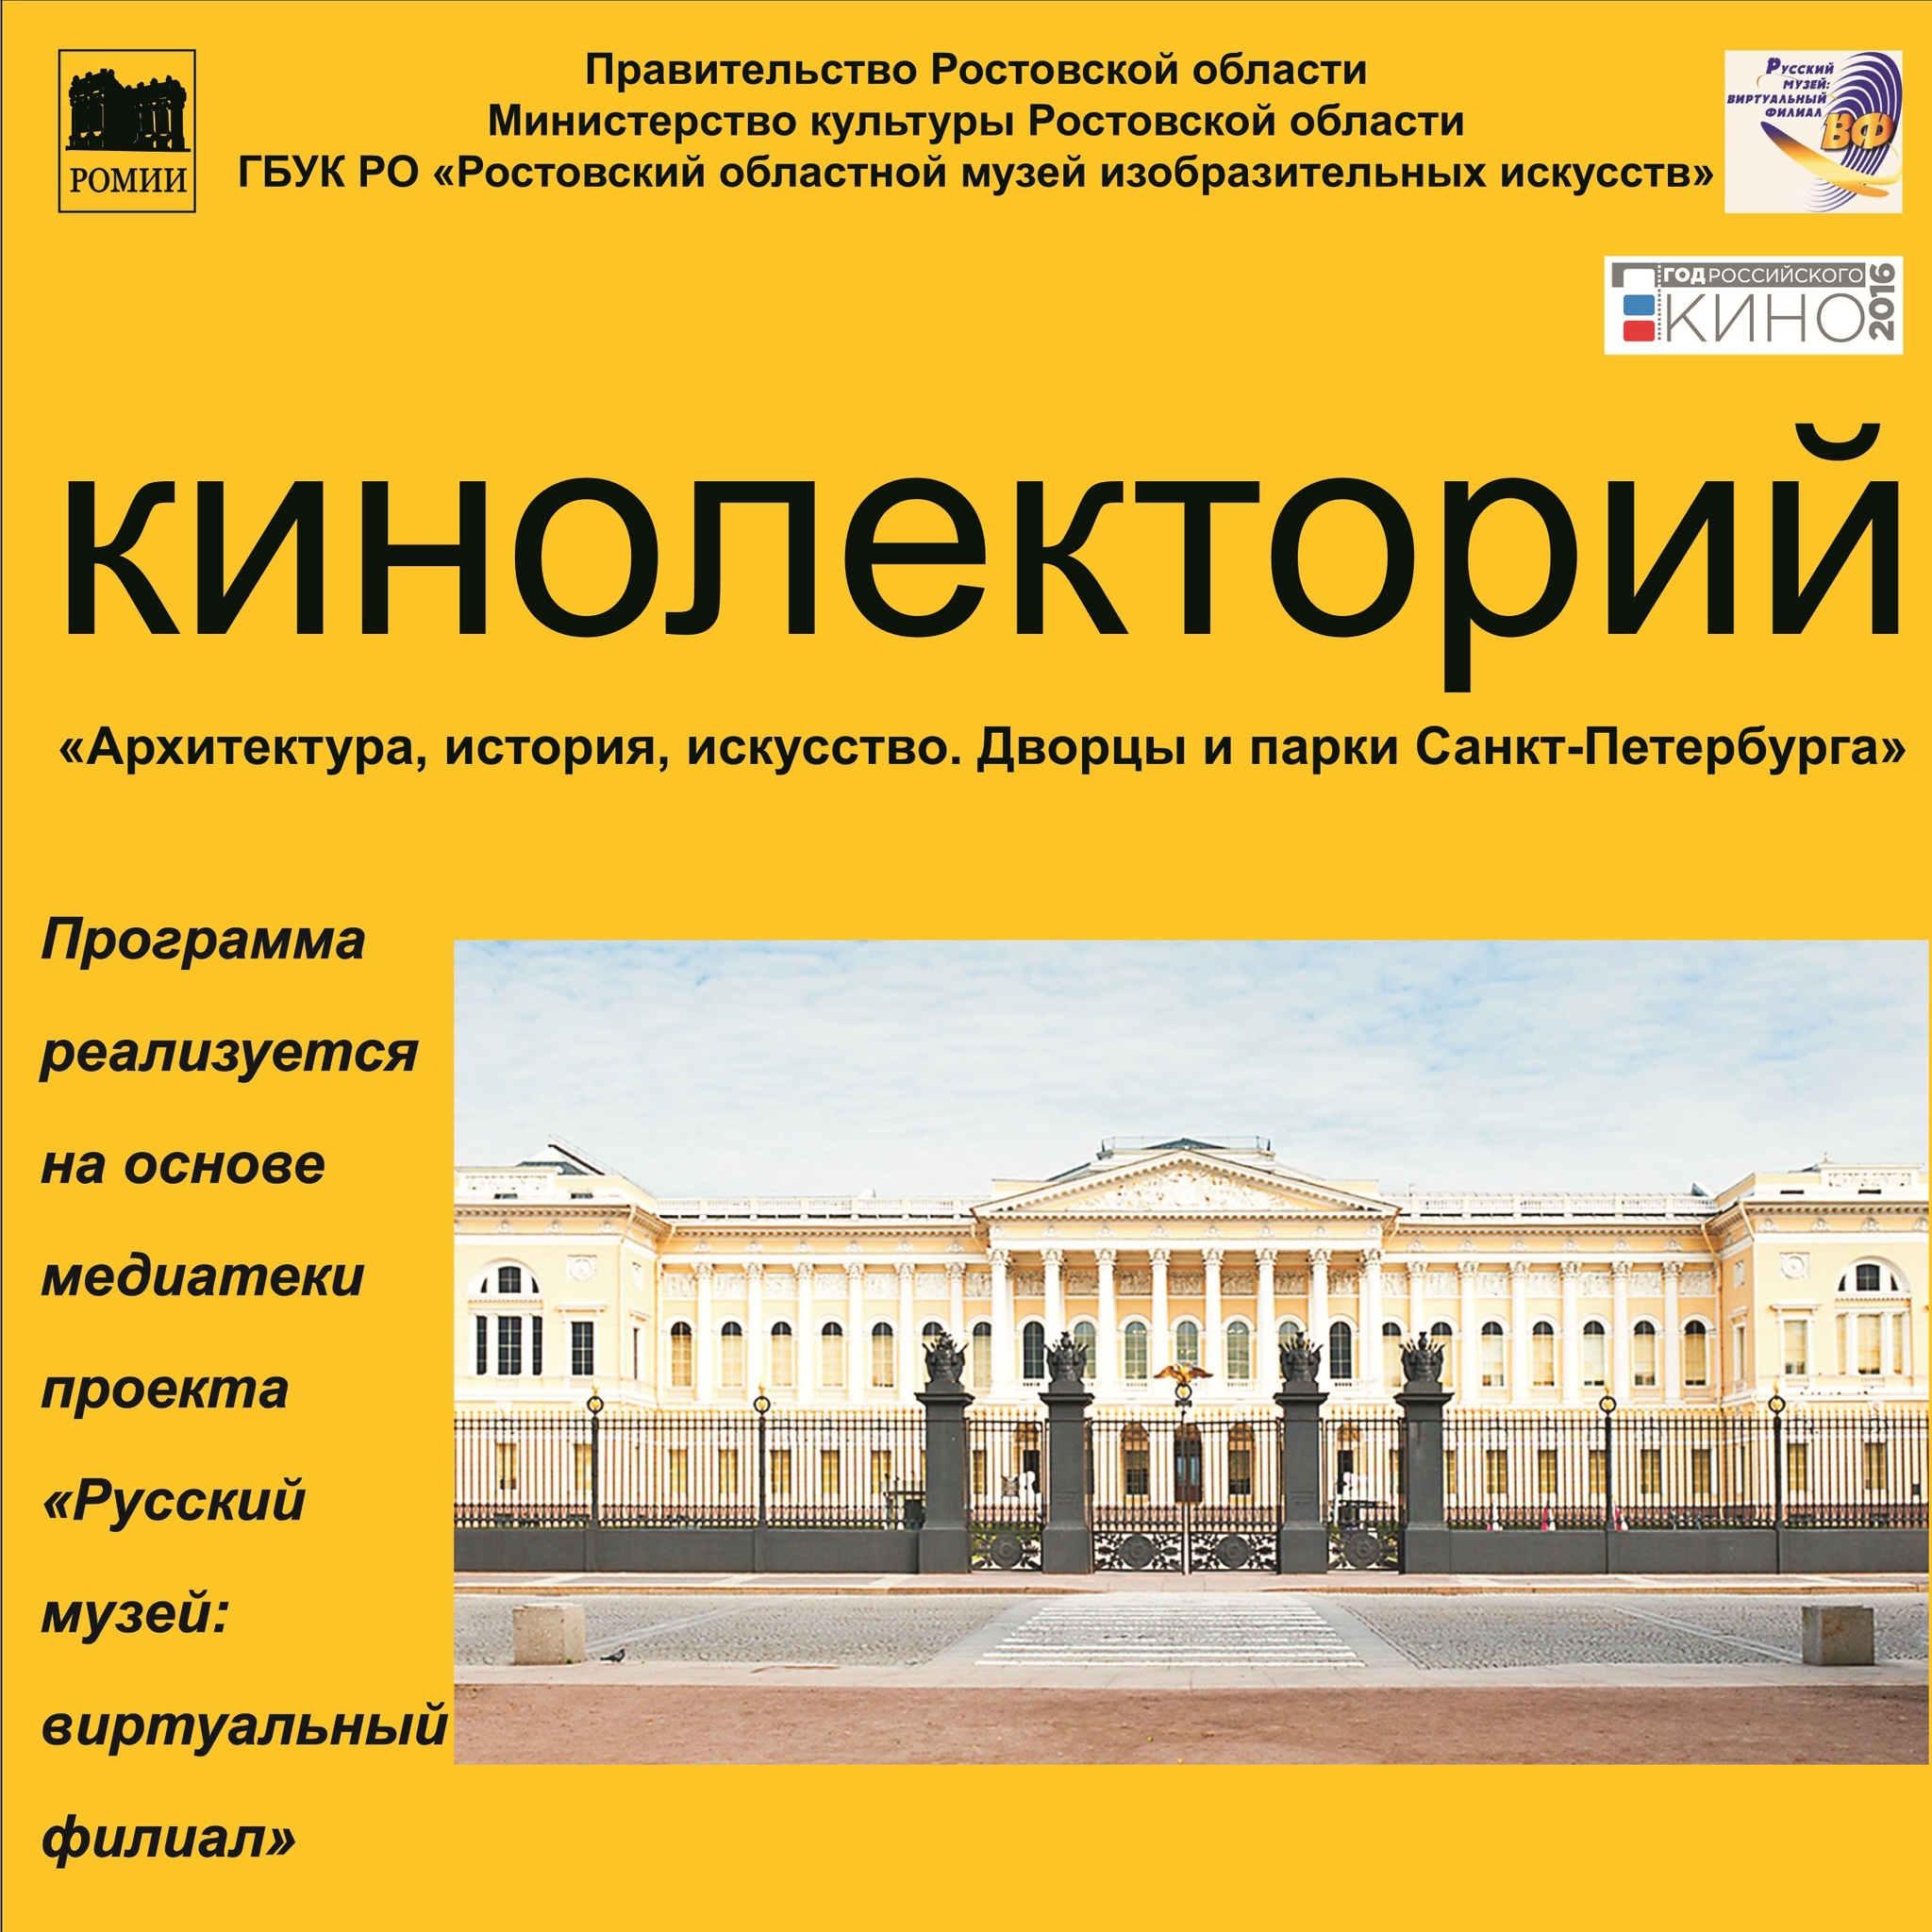 Film Screening Mikhailovsky Palace